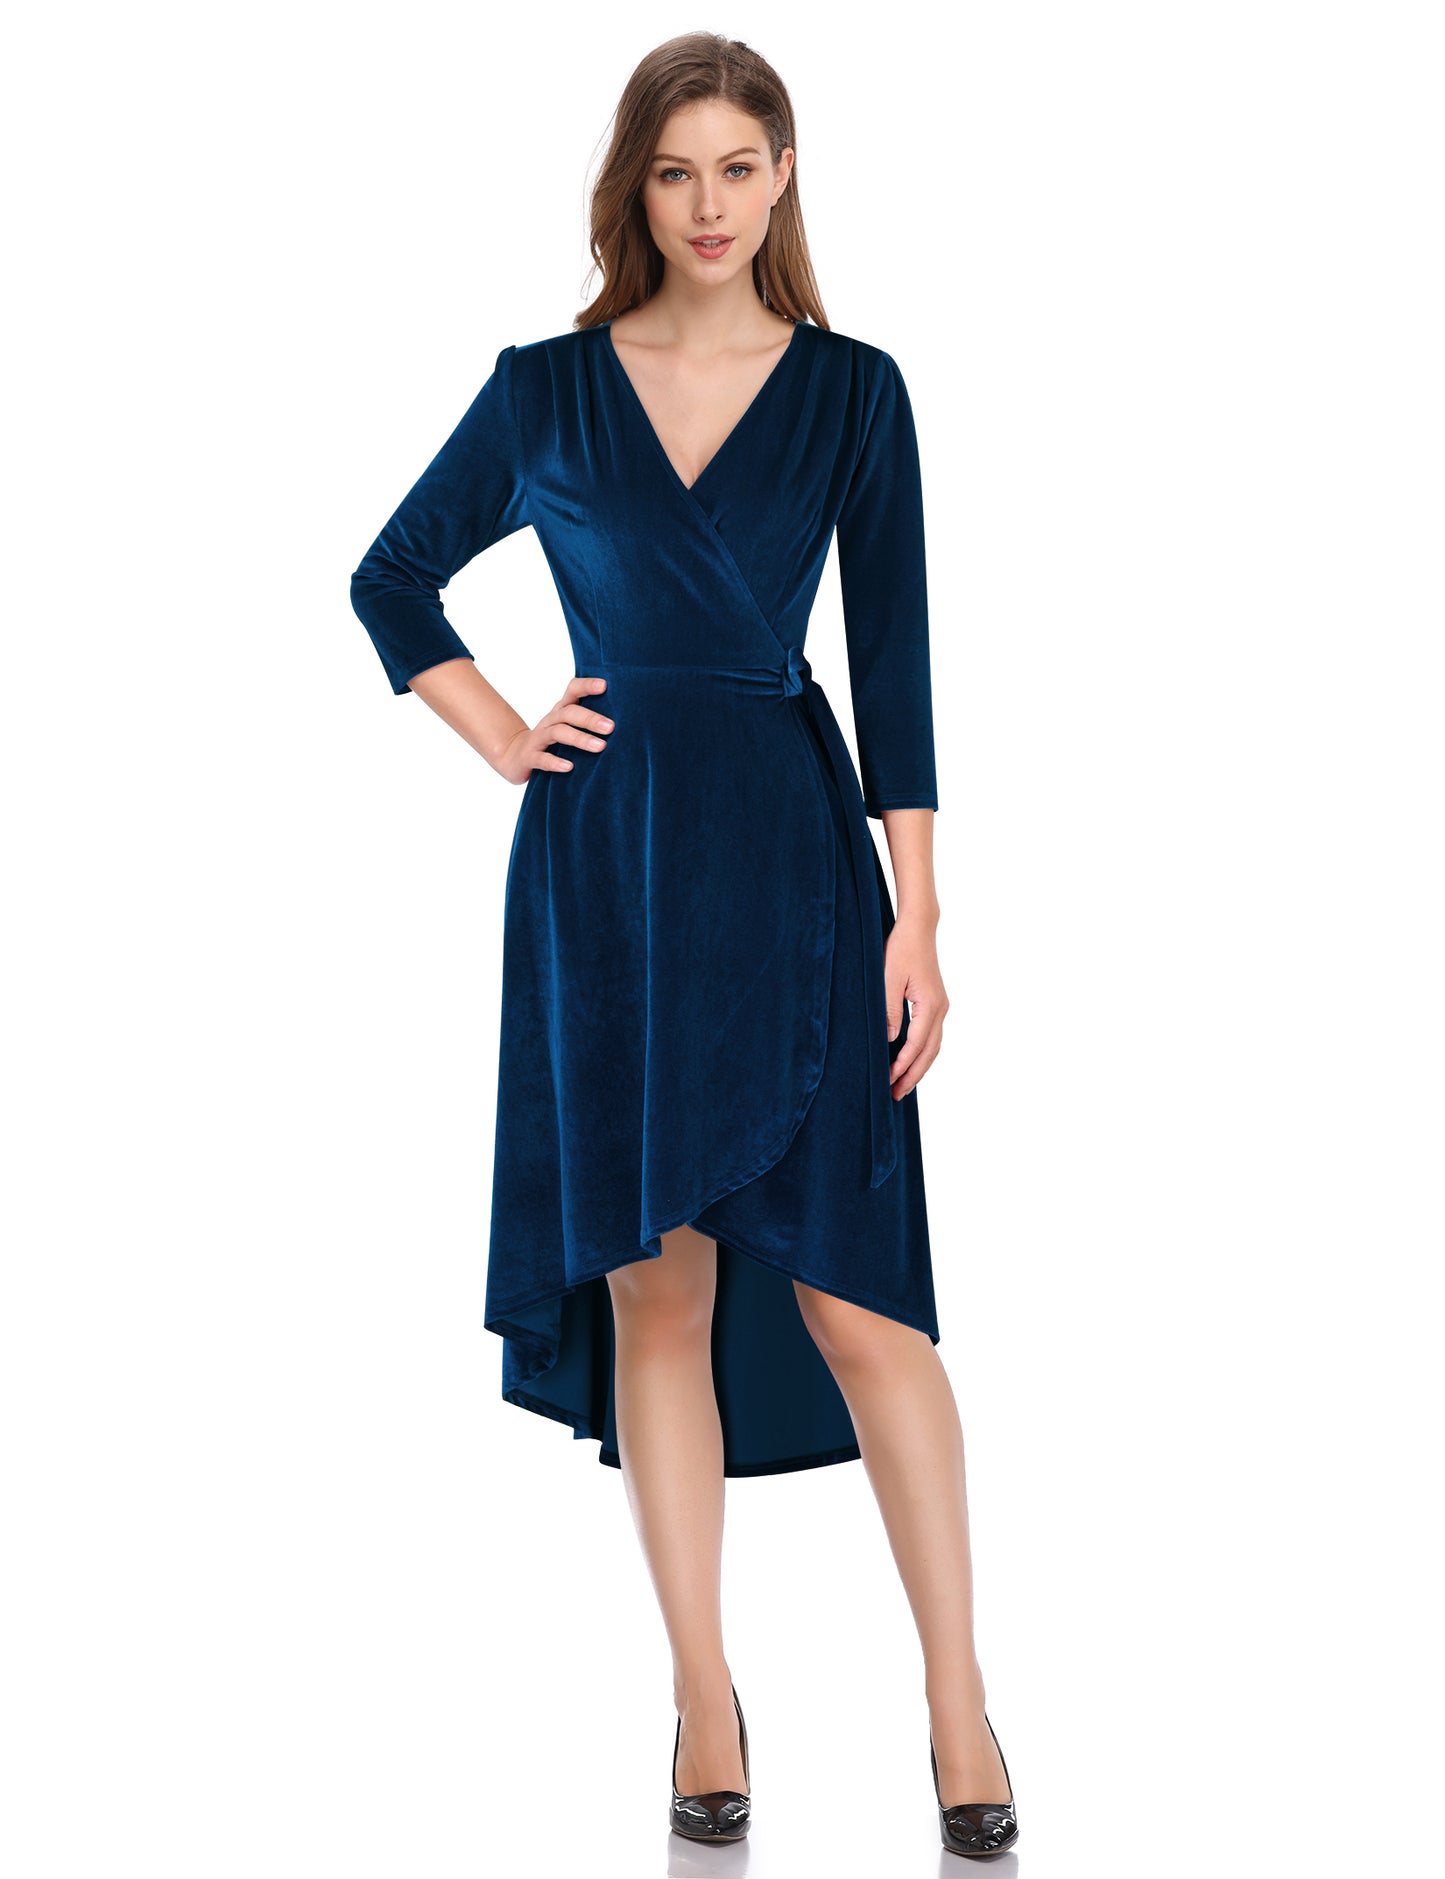 YESFASHION Women's Velvet V-Neck Long Sleeve Casual Party Dress Dark blue